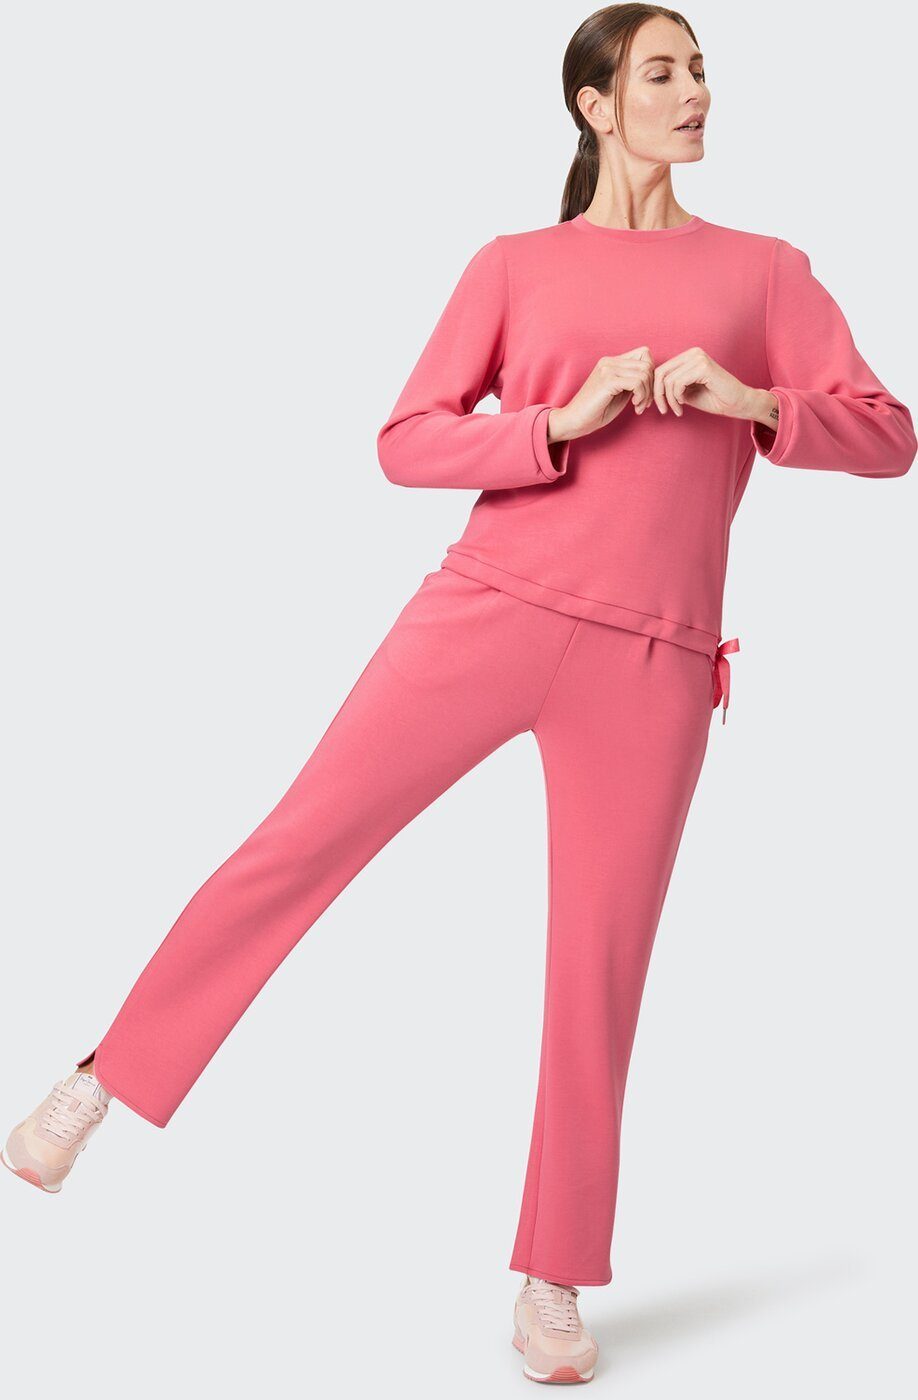 Sportswear Sweatshirt Sweatshirt JOLINA PETAL ROSE Joy